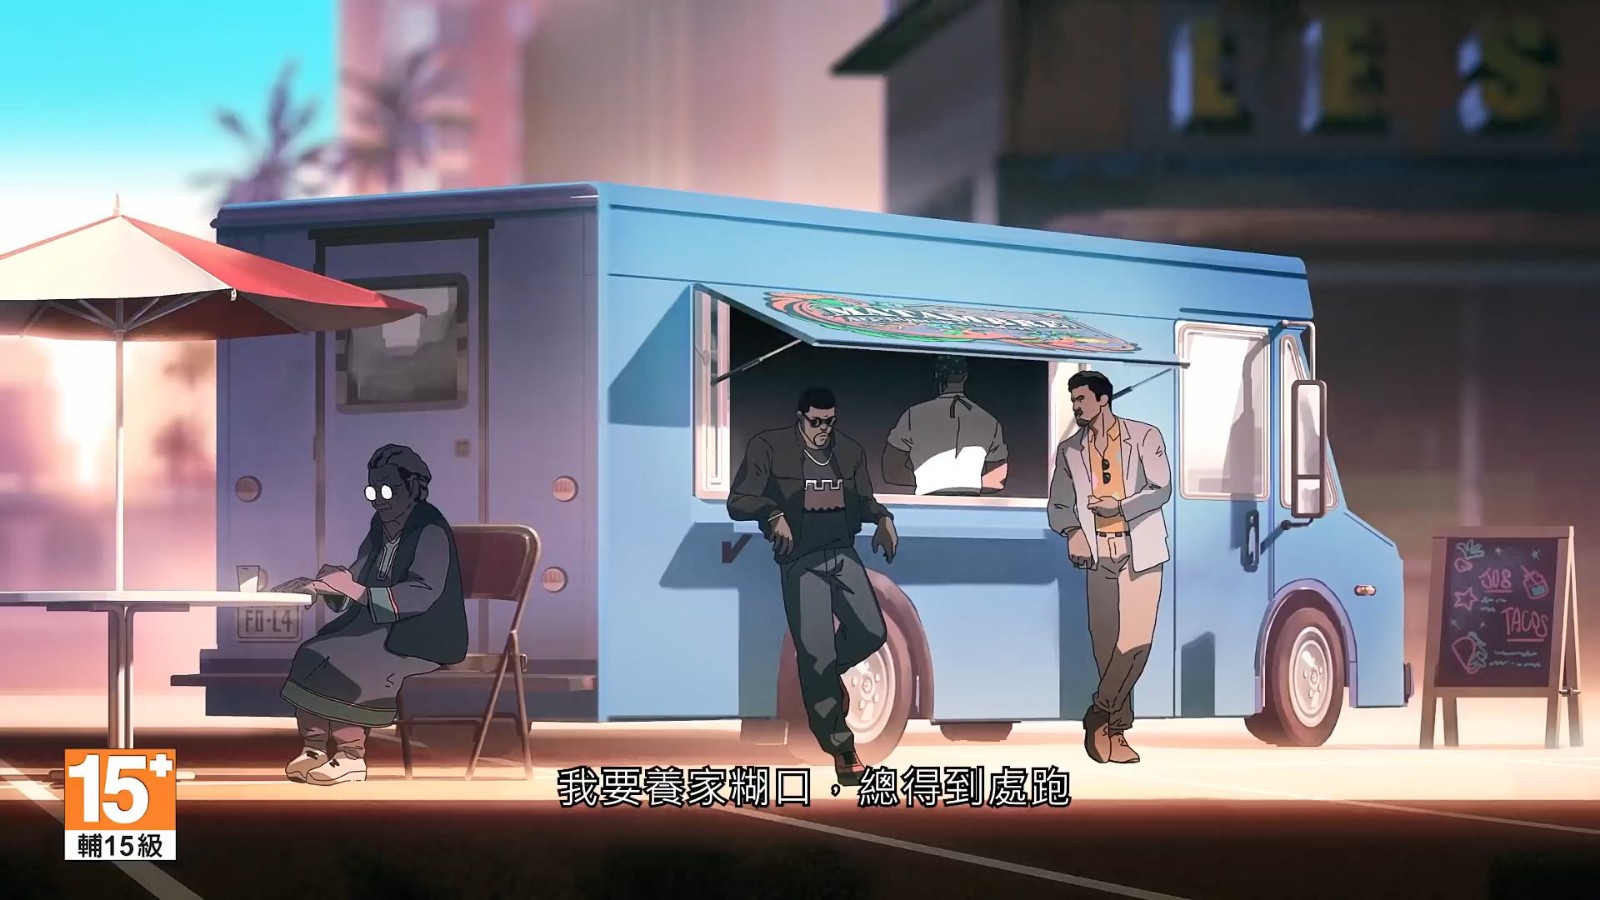 《虹彩六號》發布動畫宣傳片 講述新乾員Flores的故事